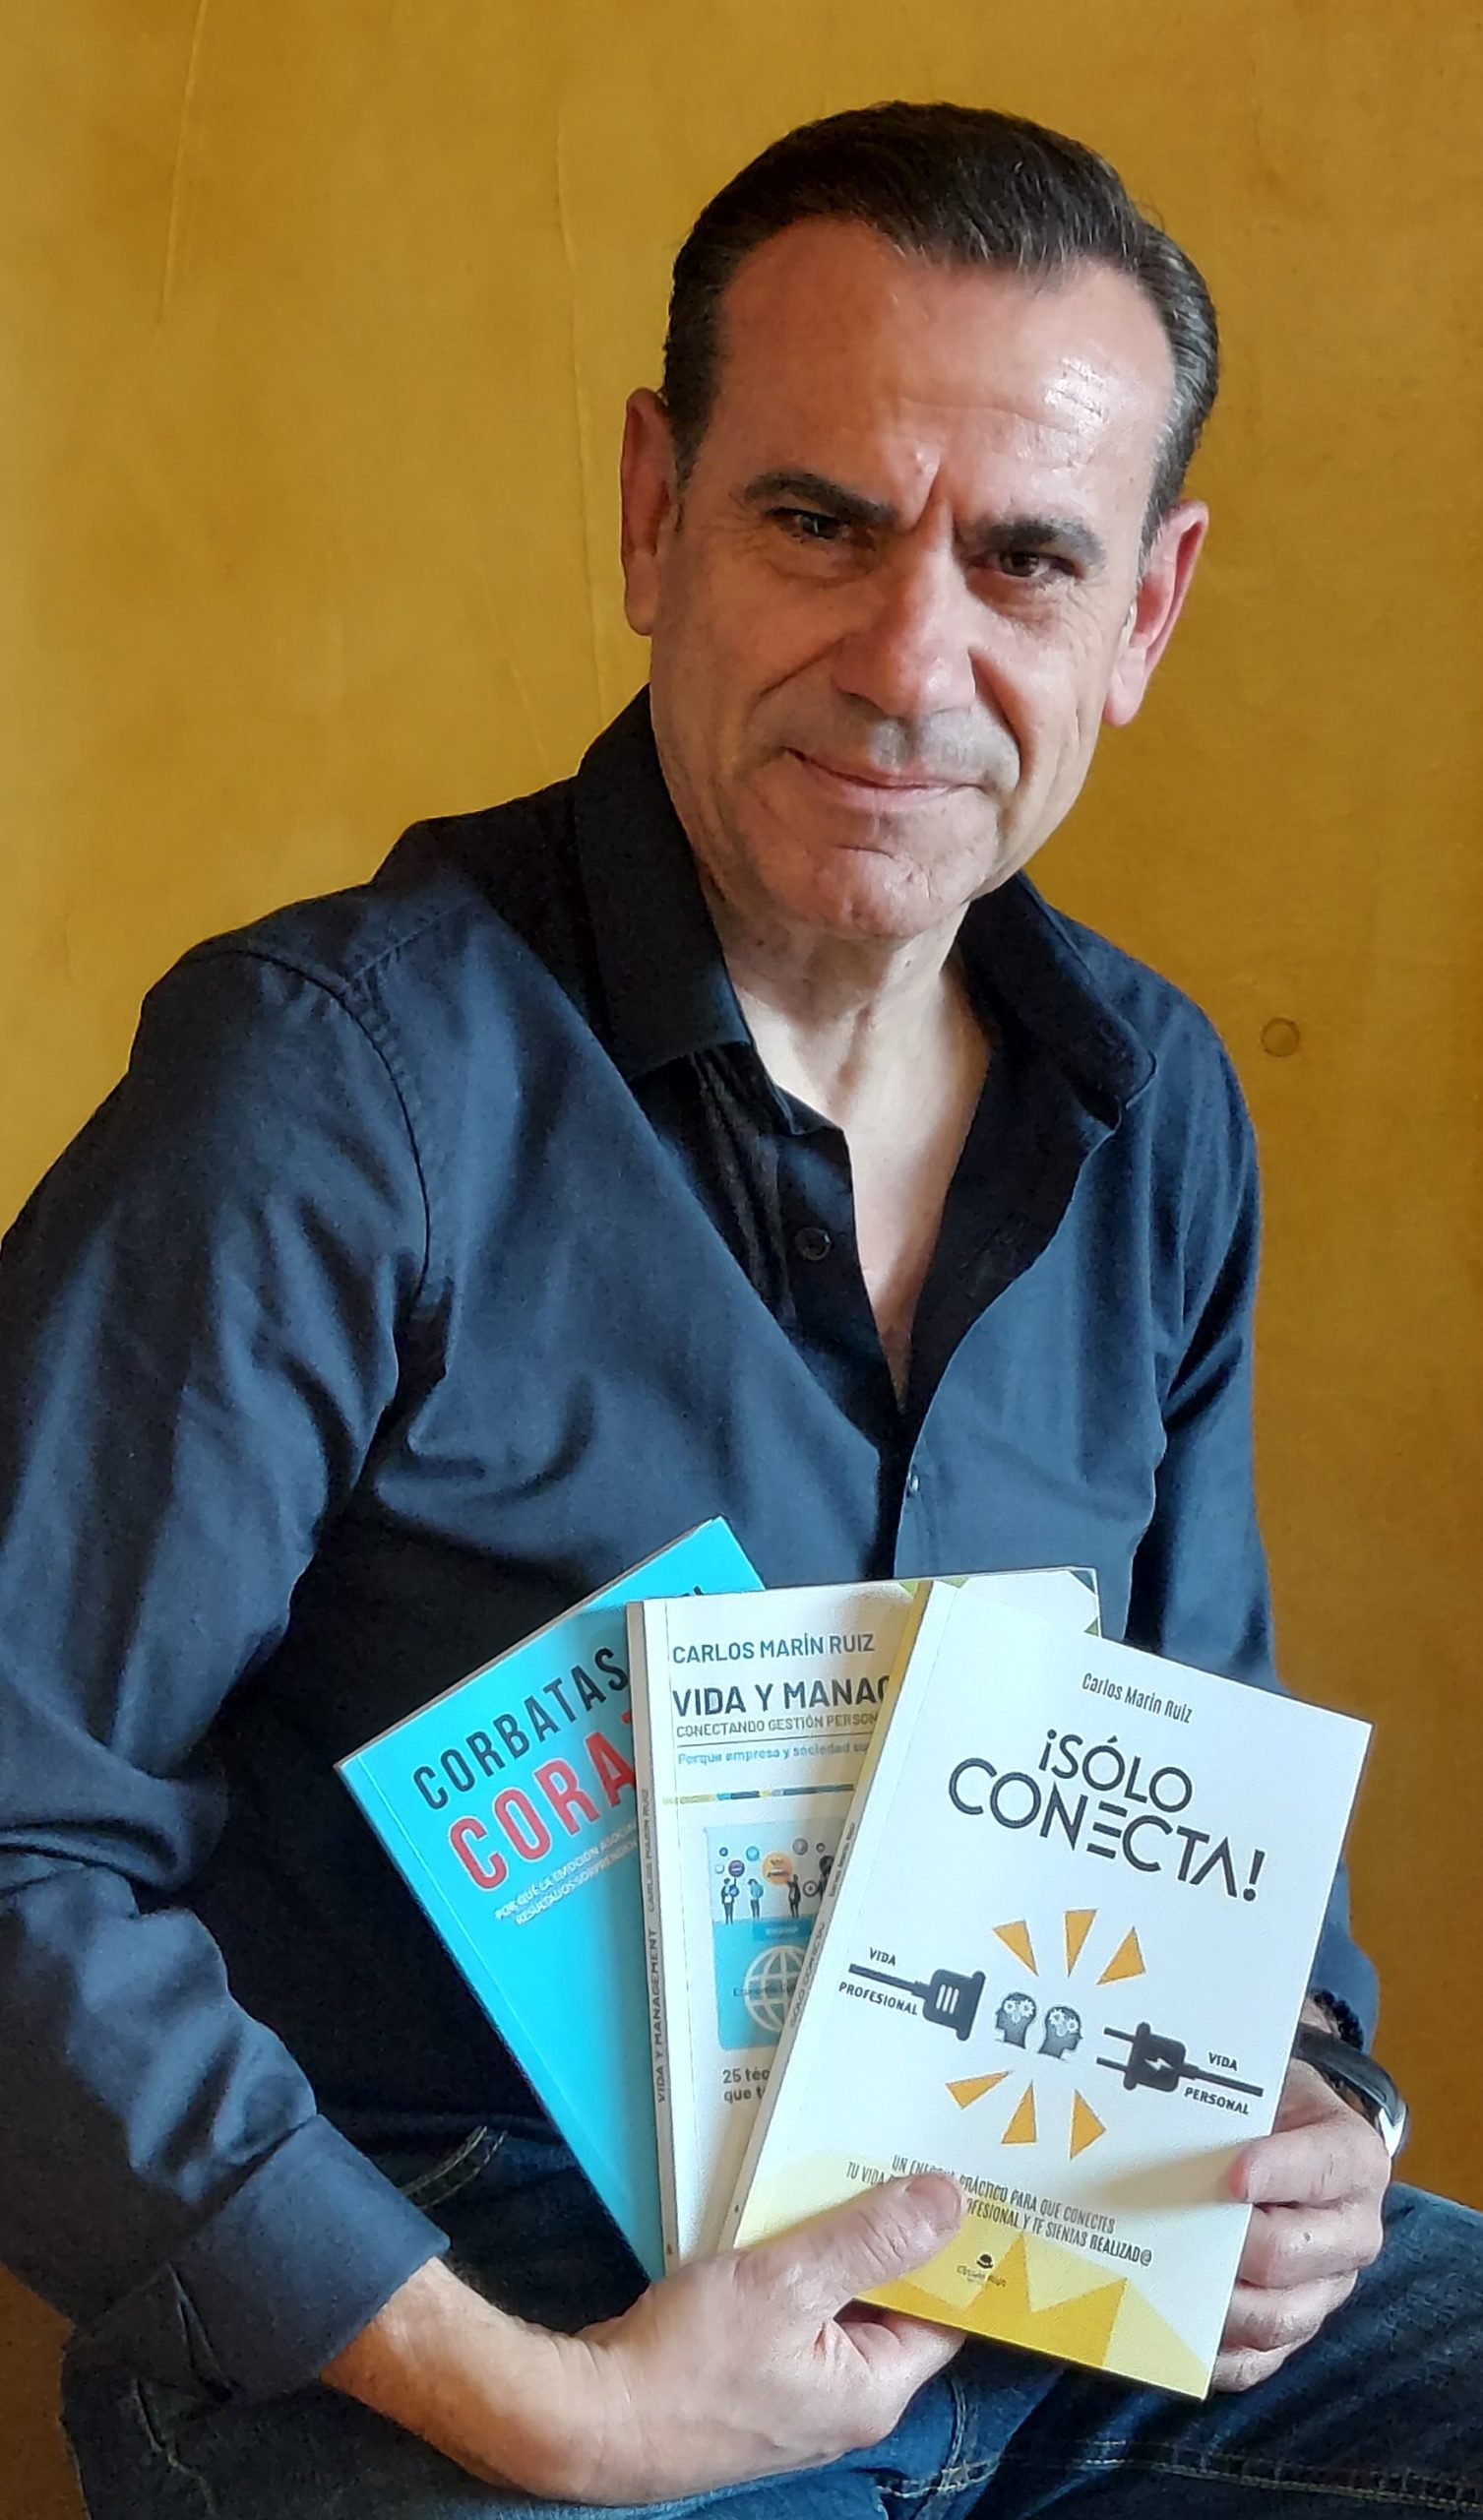 Entrevistamos a Carlos Marín Ruiz, autor de “¡Sólo conecta!”, obra que ha publicado con la editorial Círculo Rojo.